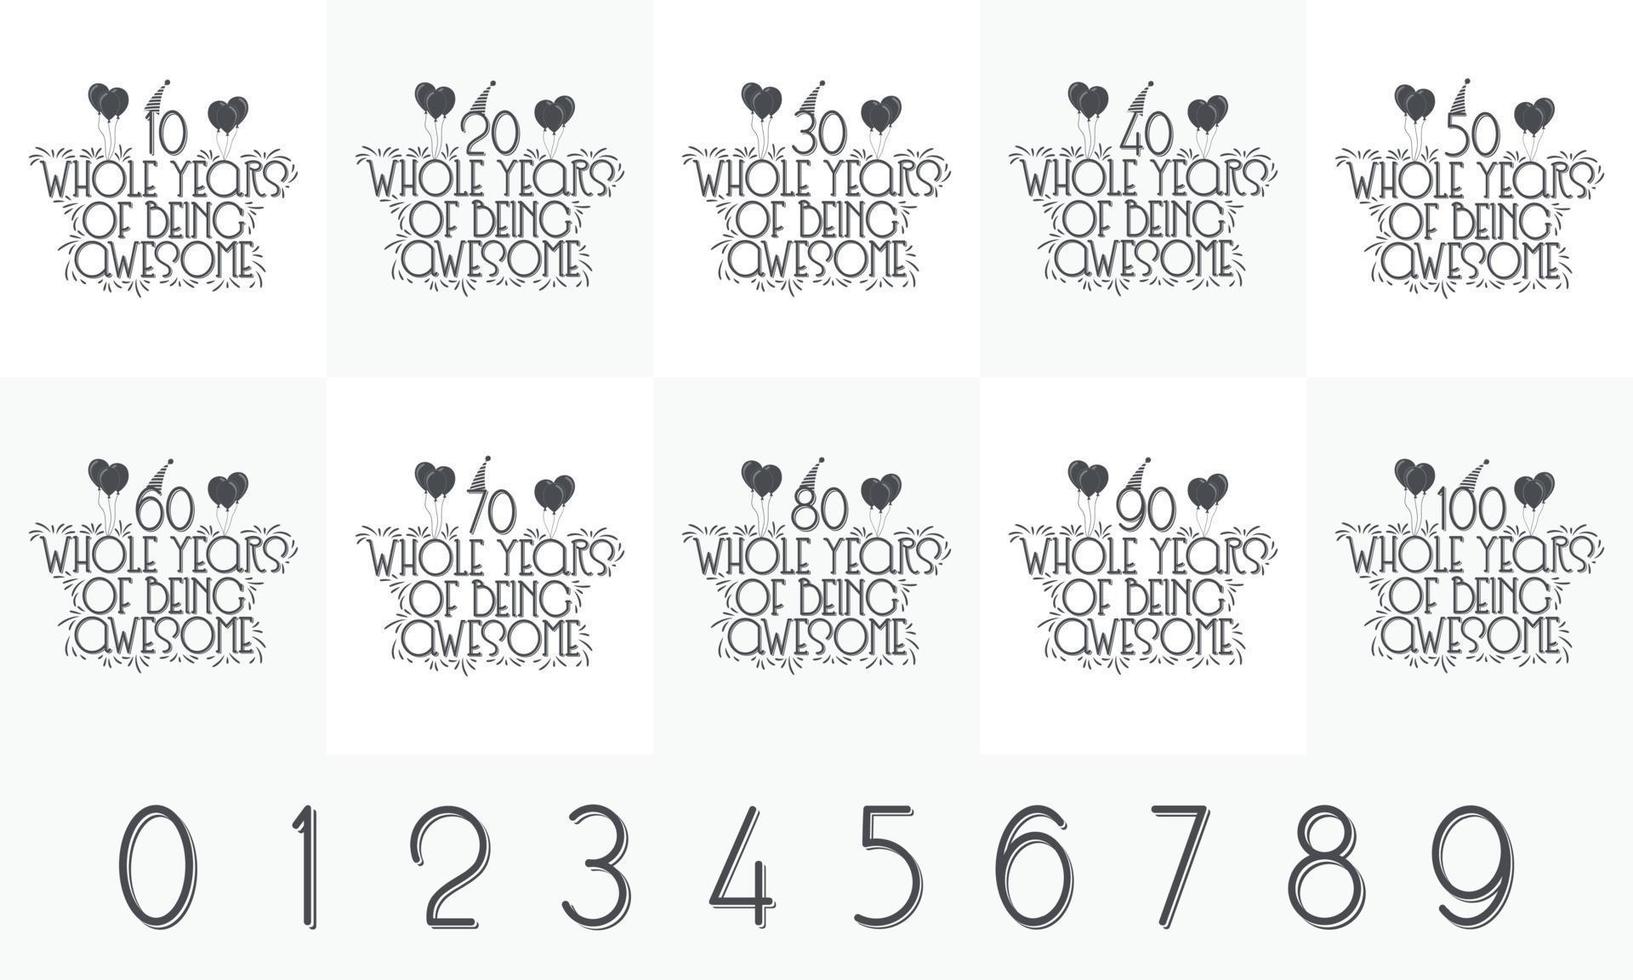 födelsedagsfirande bokstäver design bunt. 10, 20, 30, 40, 45, 50, 60, 70, 80, 90, 100 hela år av att vara fantastisk vektor